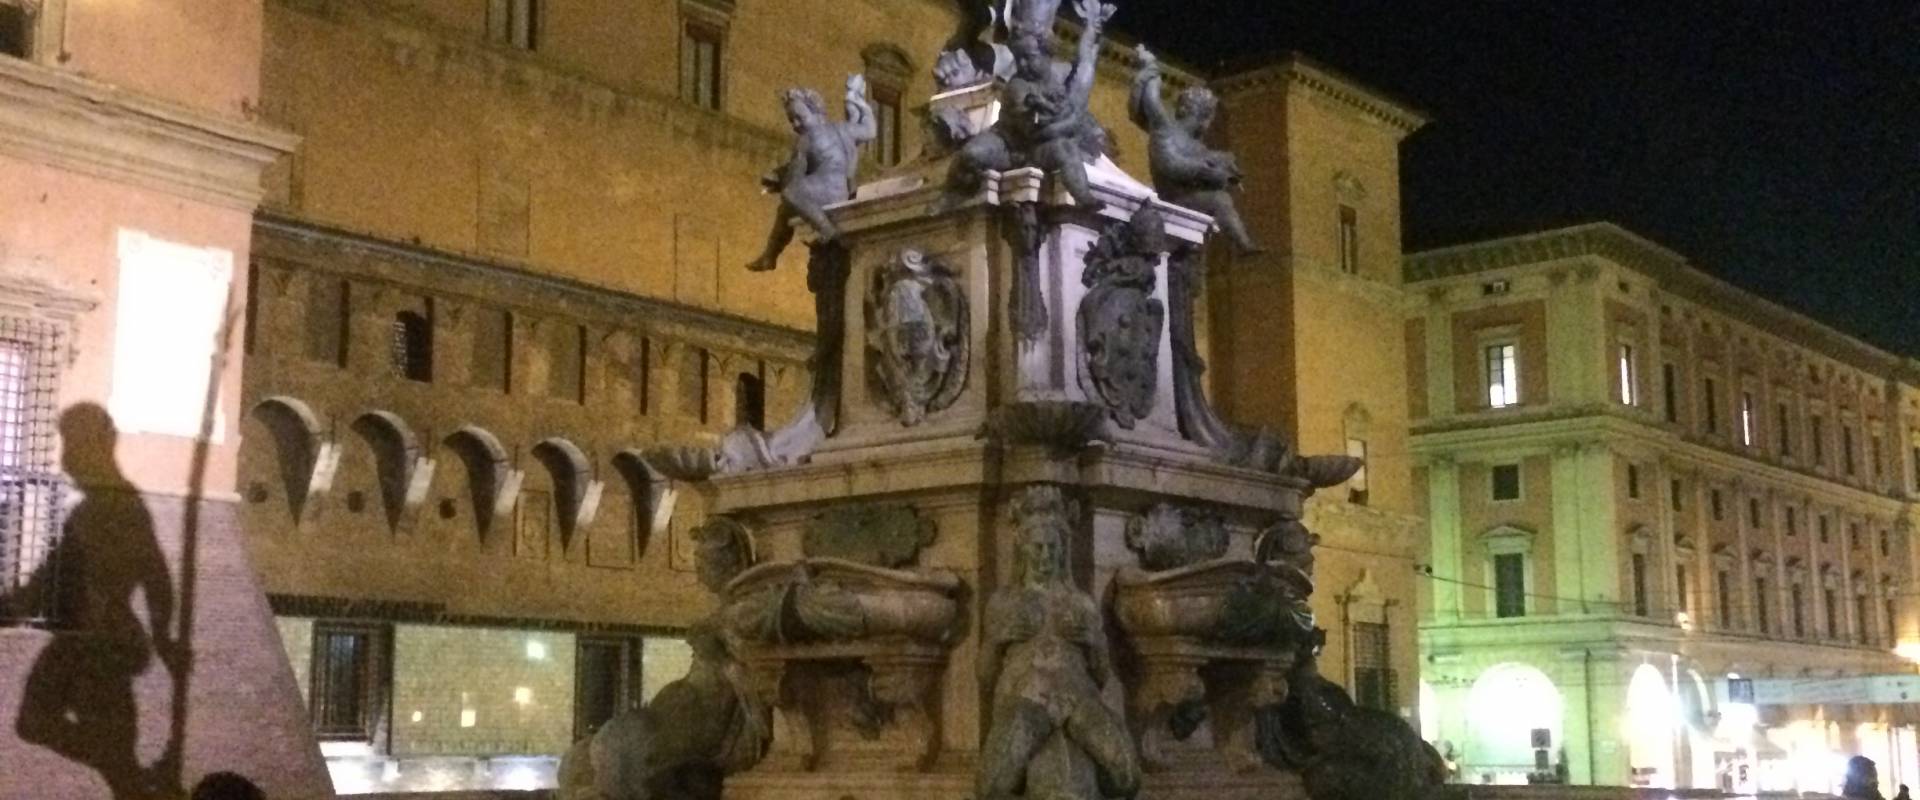 Neptune fountain, Bologna, Italy photo by carlo_corazza